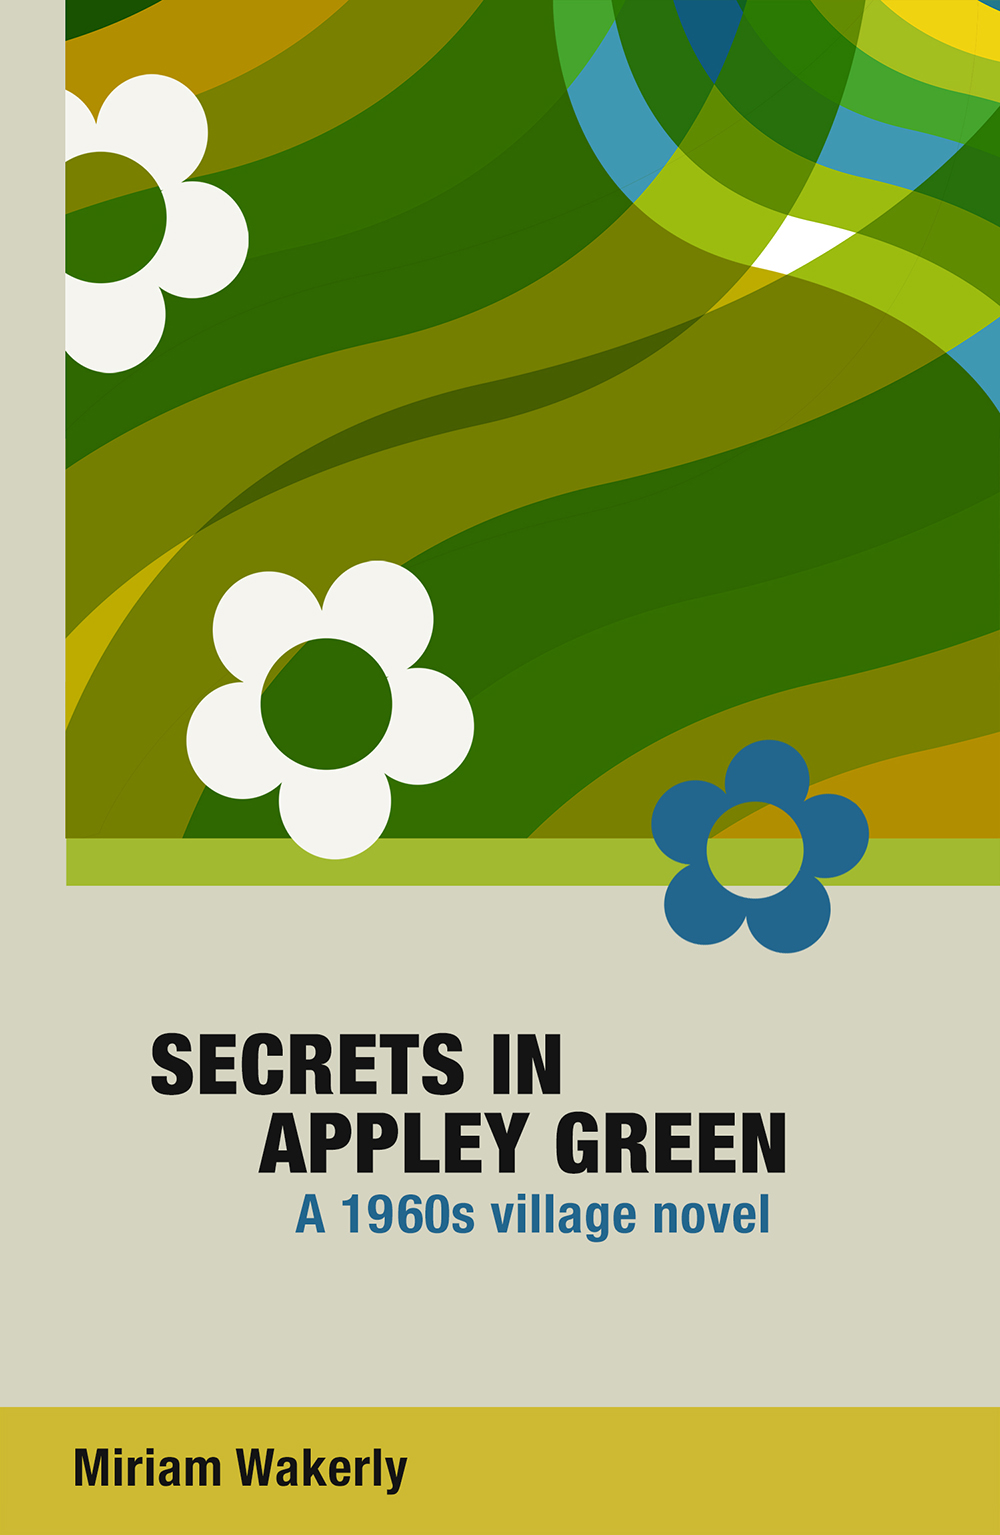 Secrets in Appley Green - a 1960s village novel